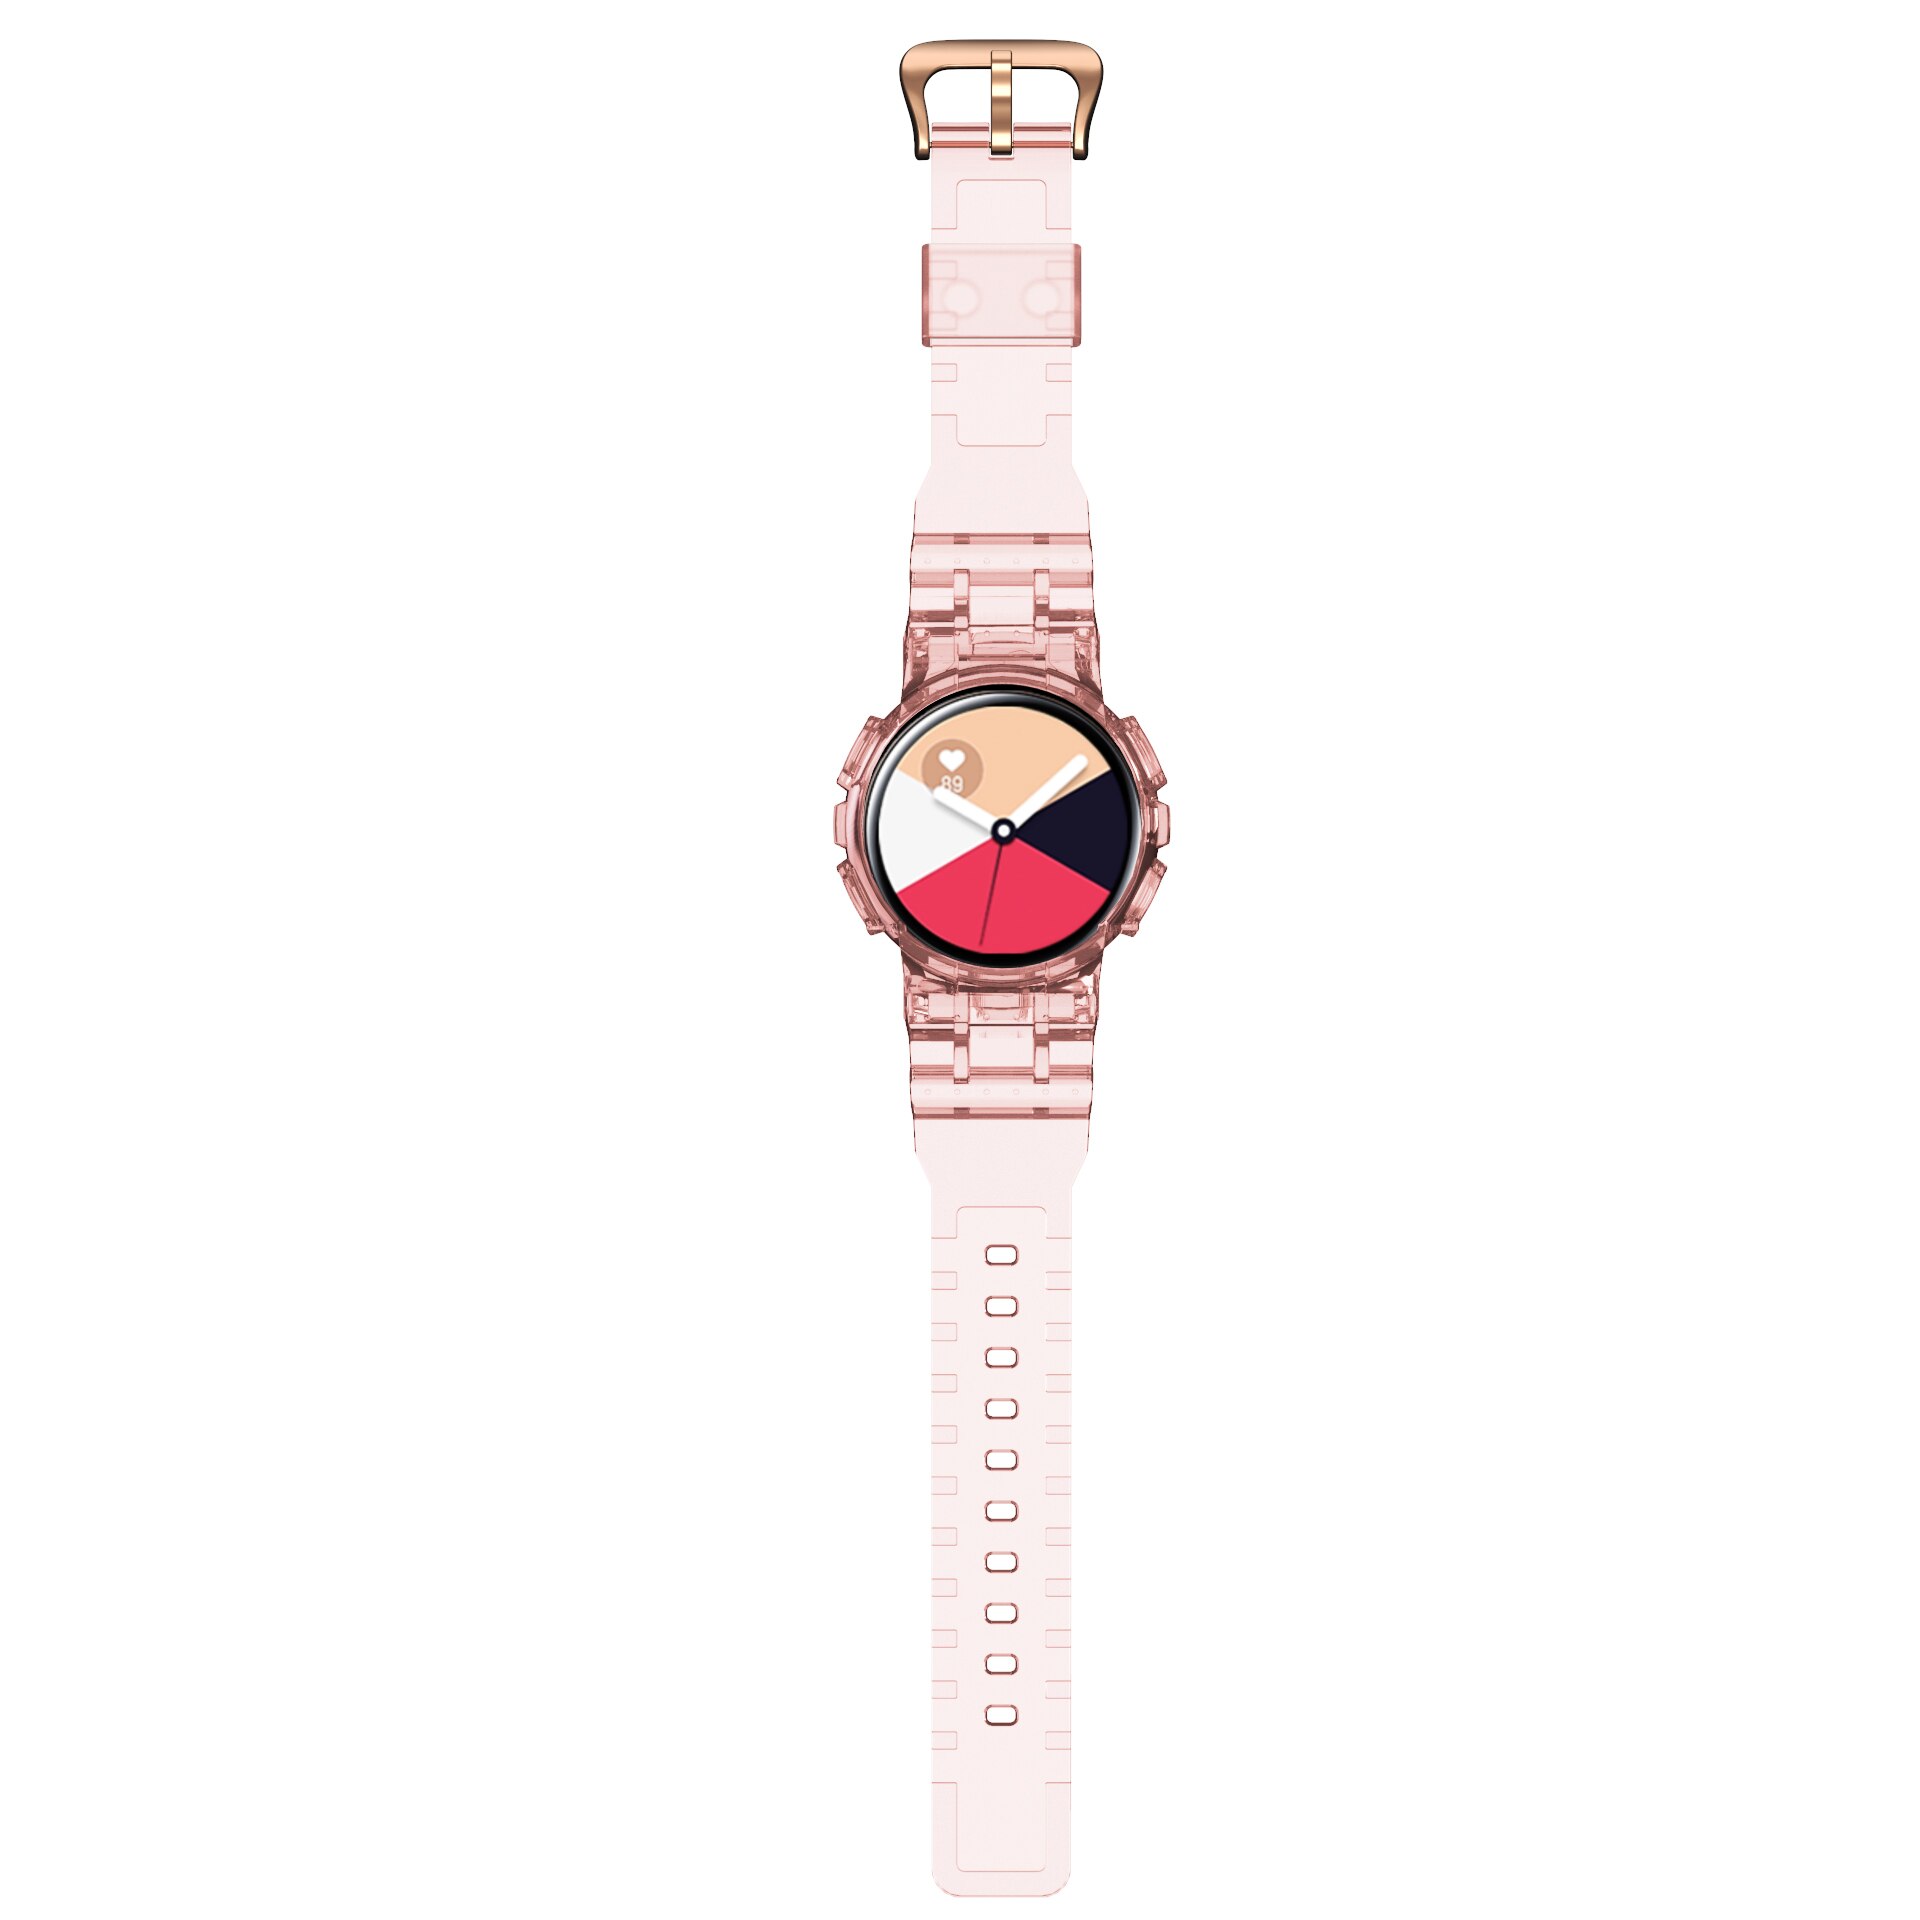 Tpu Horlogeband Voor Samsung Galaxy Actieve 2 40Mm Sport Strap Transparante Band + Case Voor Correa Galaxy Horloge actieve 2 Band: Pink